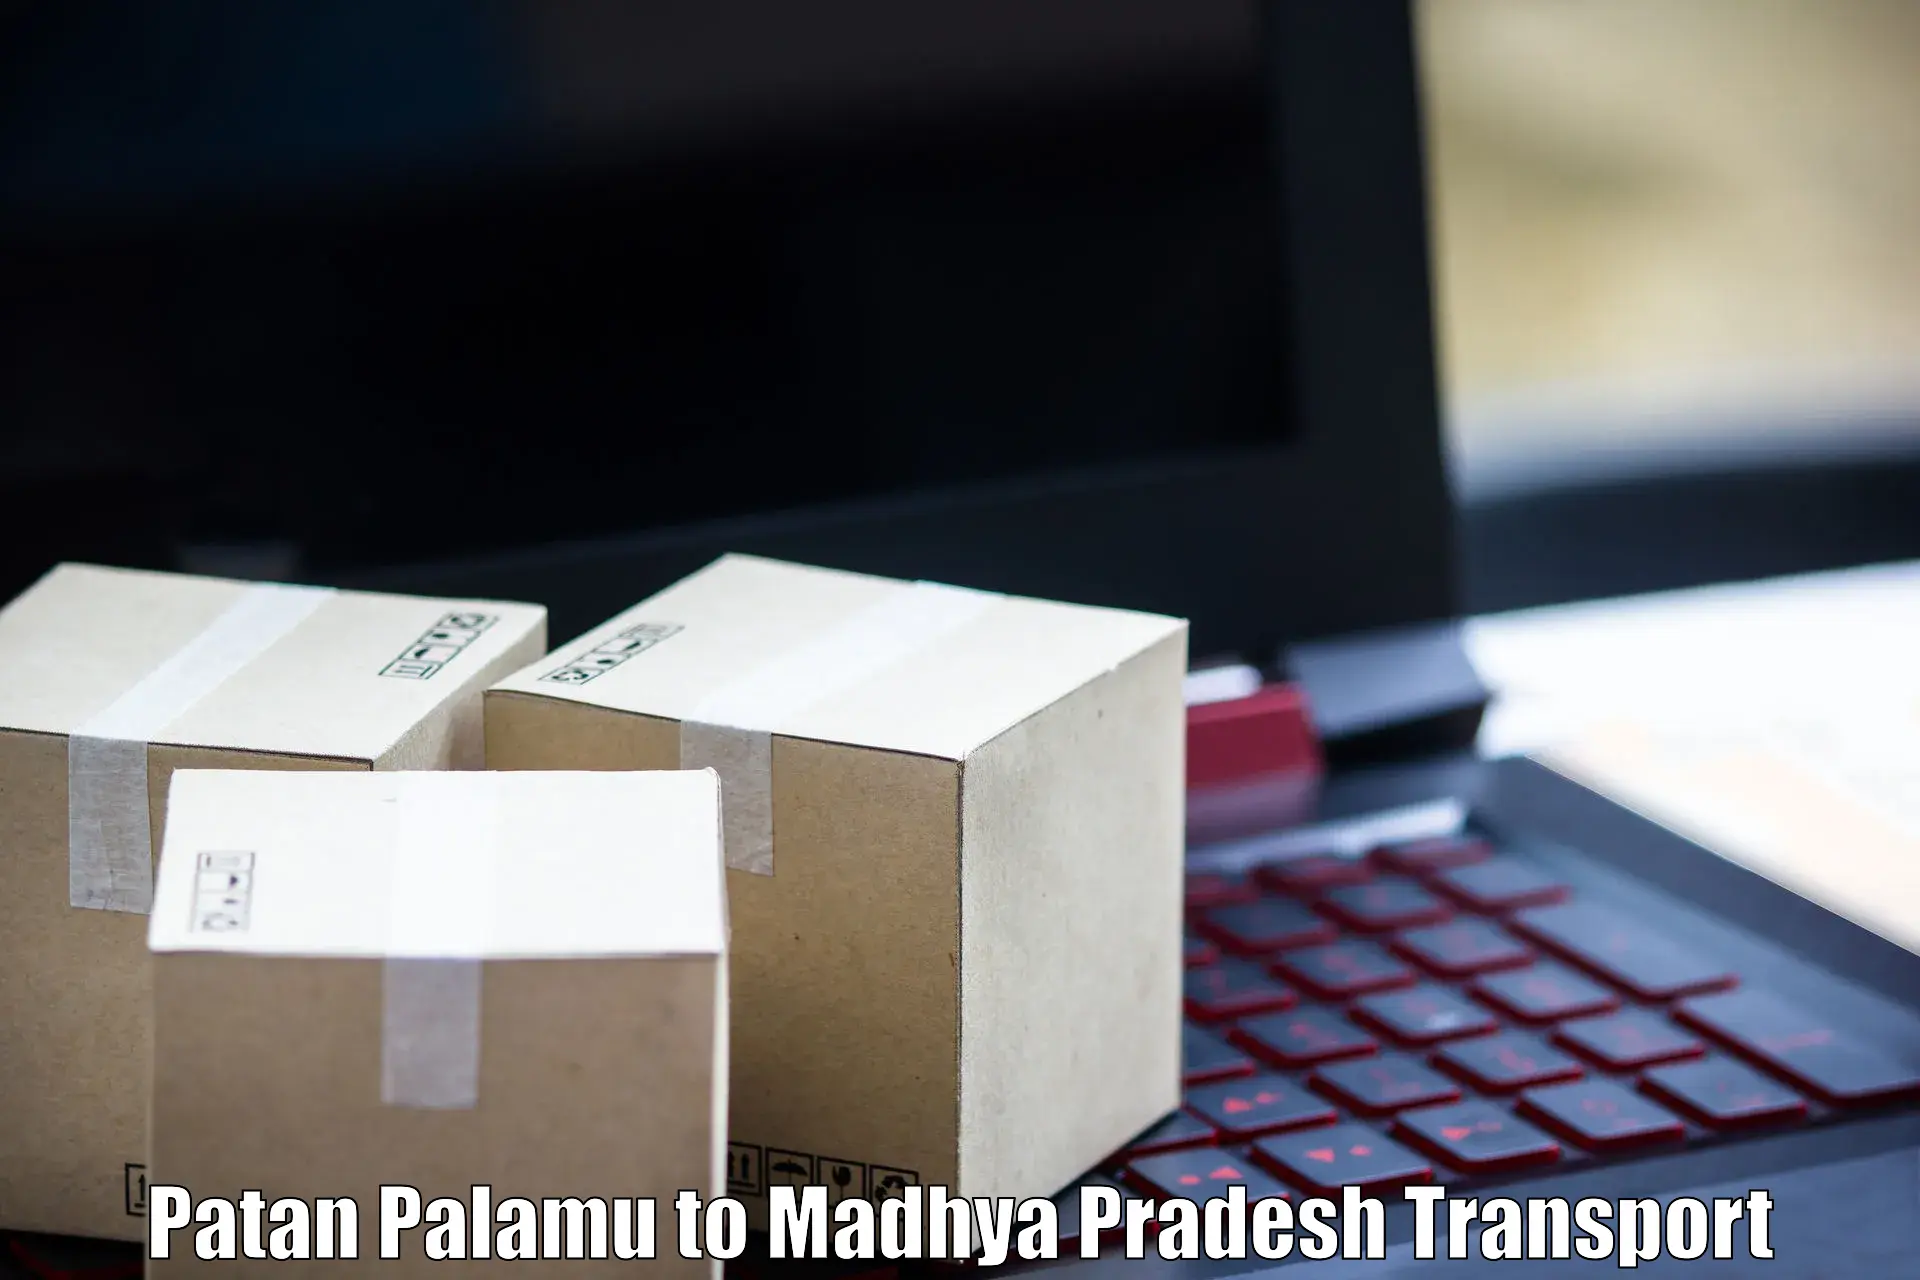 Daily parcel service transport Patan Palamu to Mundi